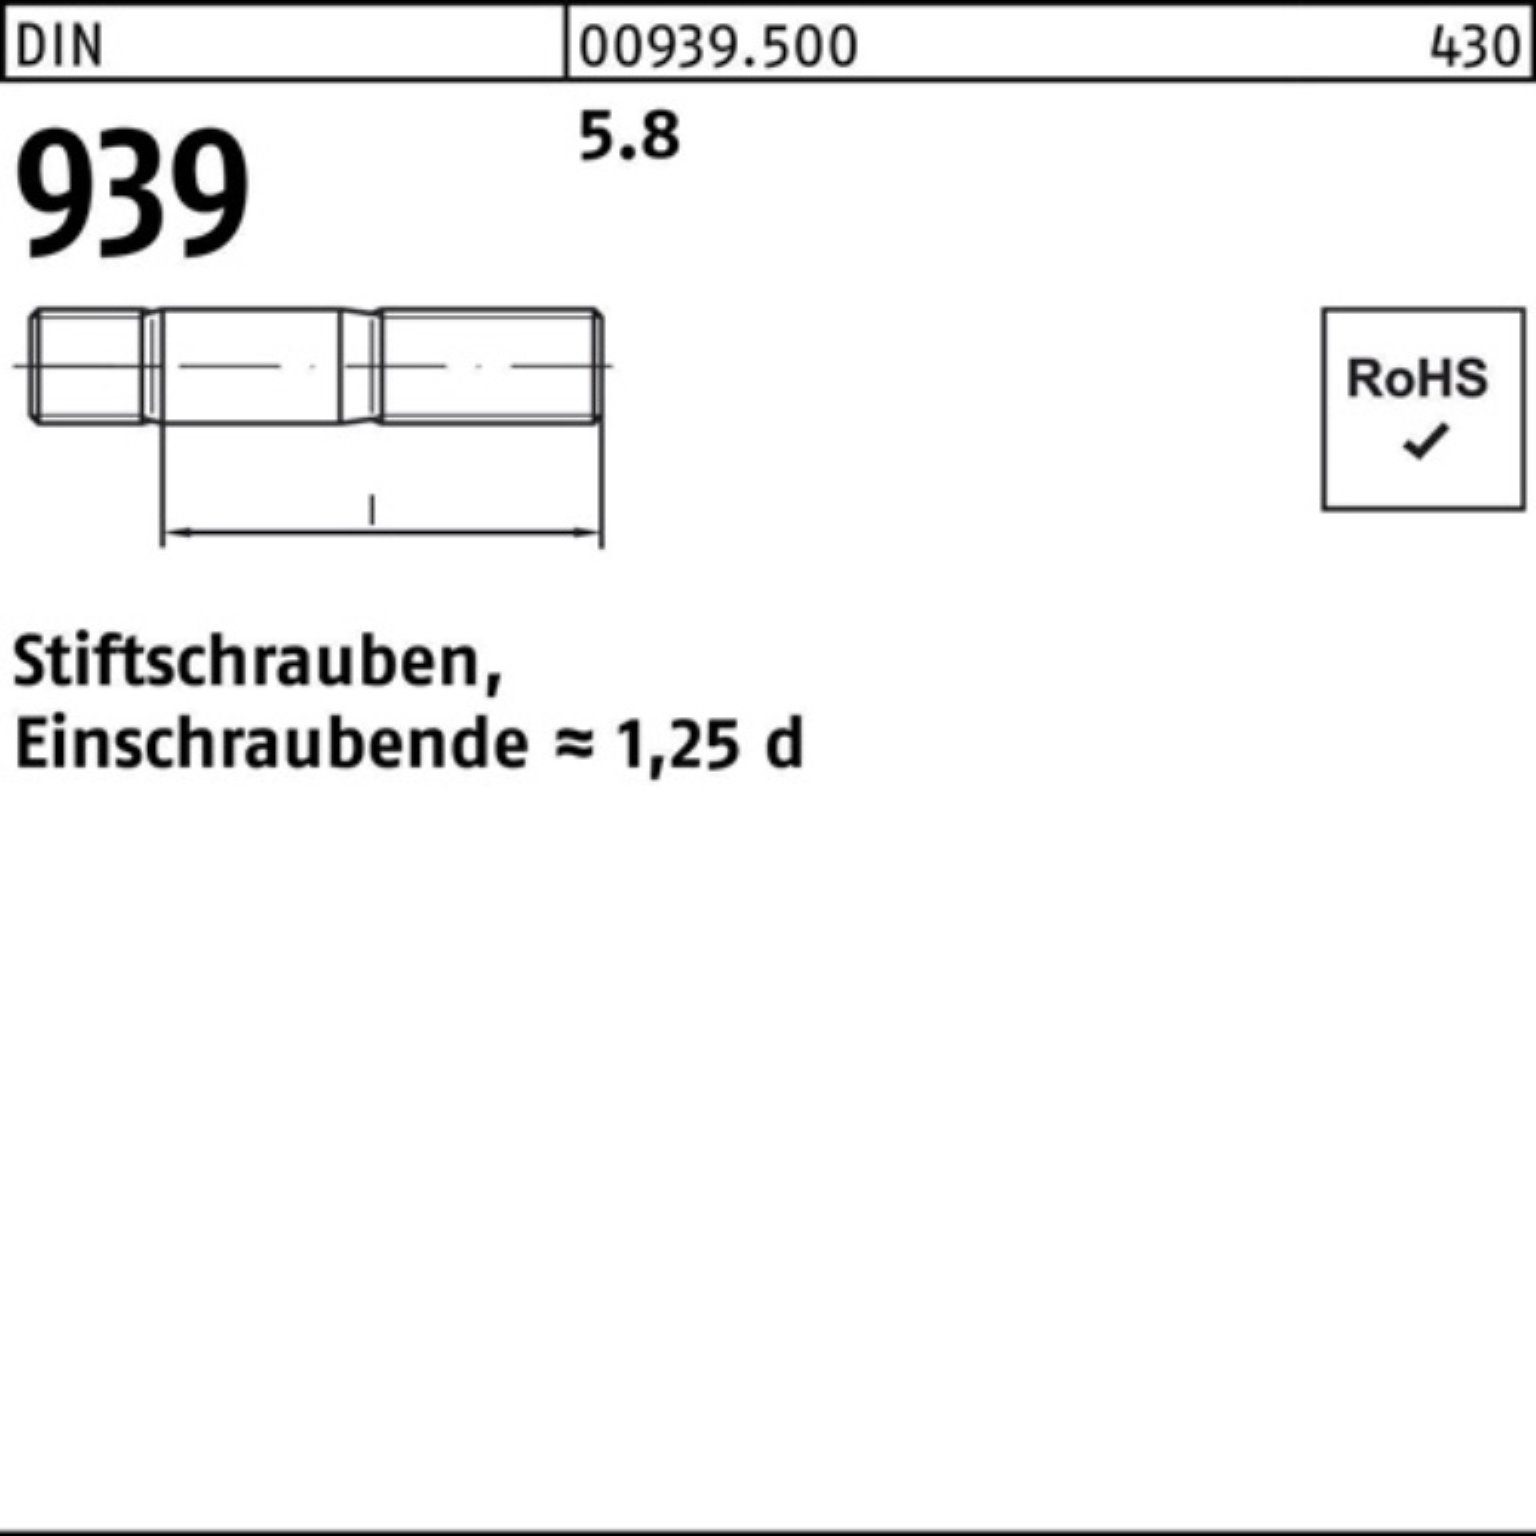 939 Stiftschraube DIN Reyher Einschraubende=1,25d 5.8 M30x 10 Stiftschraube 100er Pack S 65